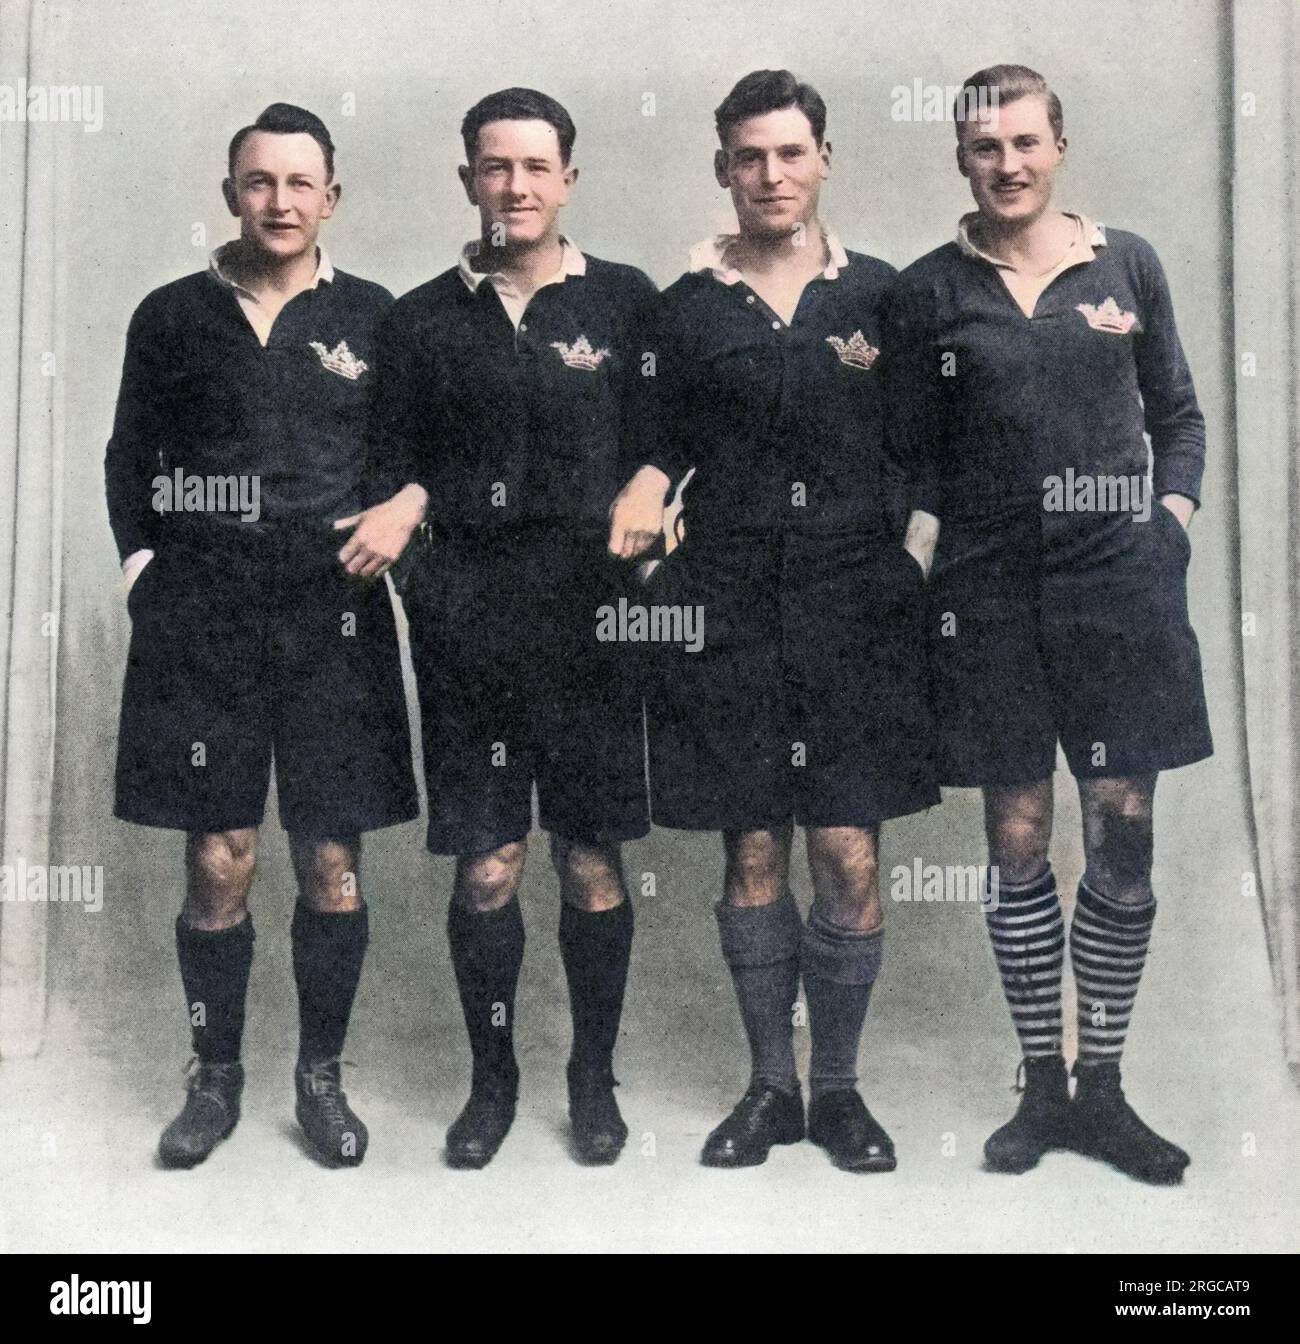 The Oxford University 'Scoring machine' : le rugby écossais trois quarts de ligne, composé entièrement de joueurs de l'université d'Oxford, qui a contribué à un grand slam écossais dans le tournoi des cinq nations de 1925. De gauche à droite, A.C.Wallace, G. G. G. G. Aitken, G. P. S.Macpherson et I.S.Smith. MacPherson n'a pas été en mesure de jouer dans le dispositif contre l'Irlande à Dublin, en raison d'une blessure, et sa place a été prise par J.C.dykes Banque D'Images